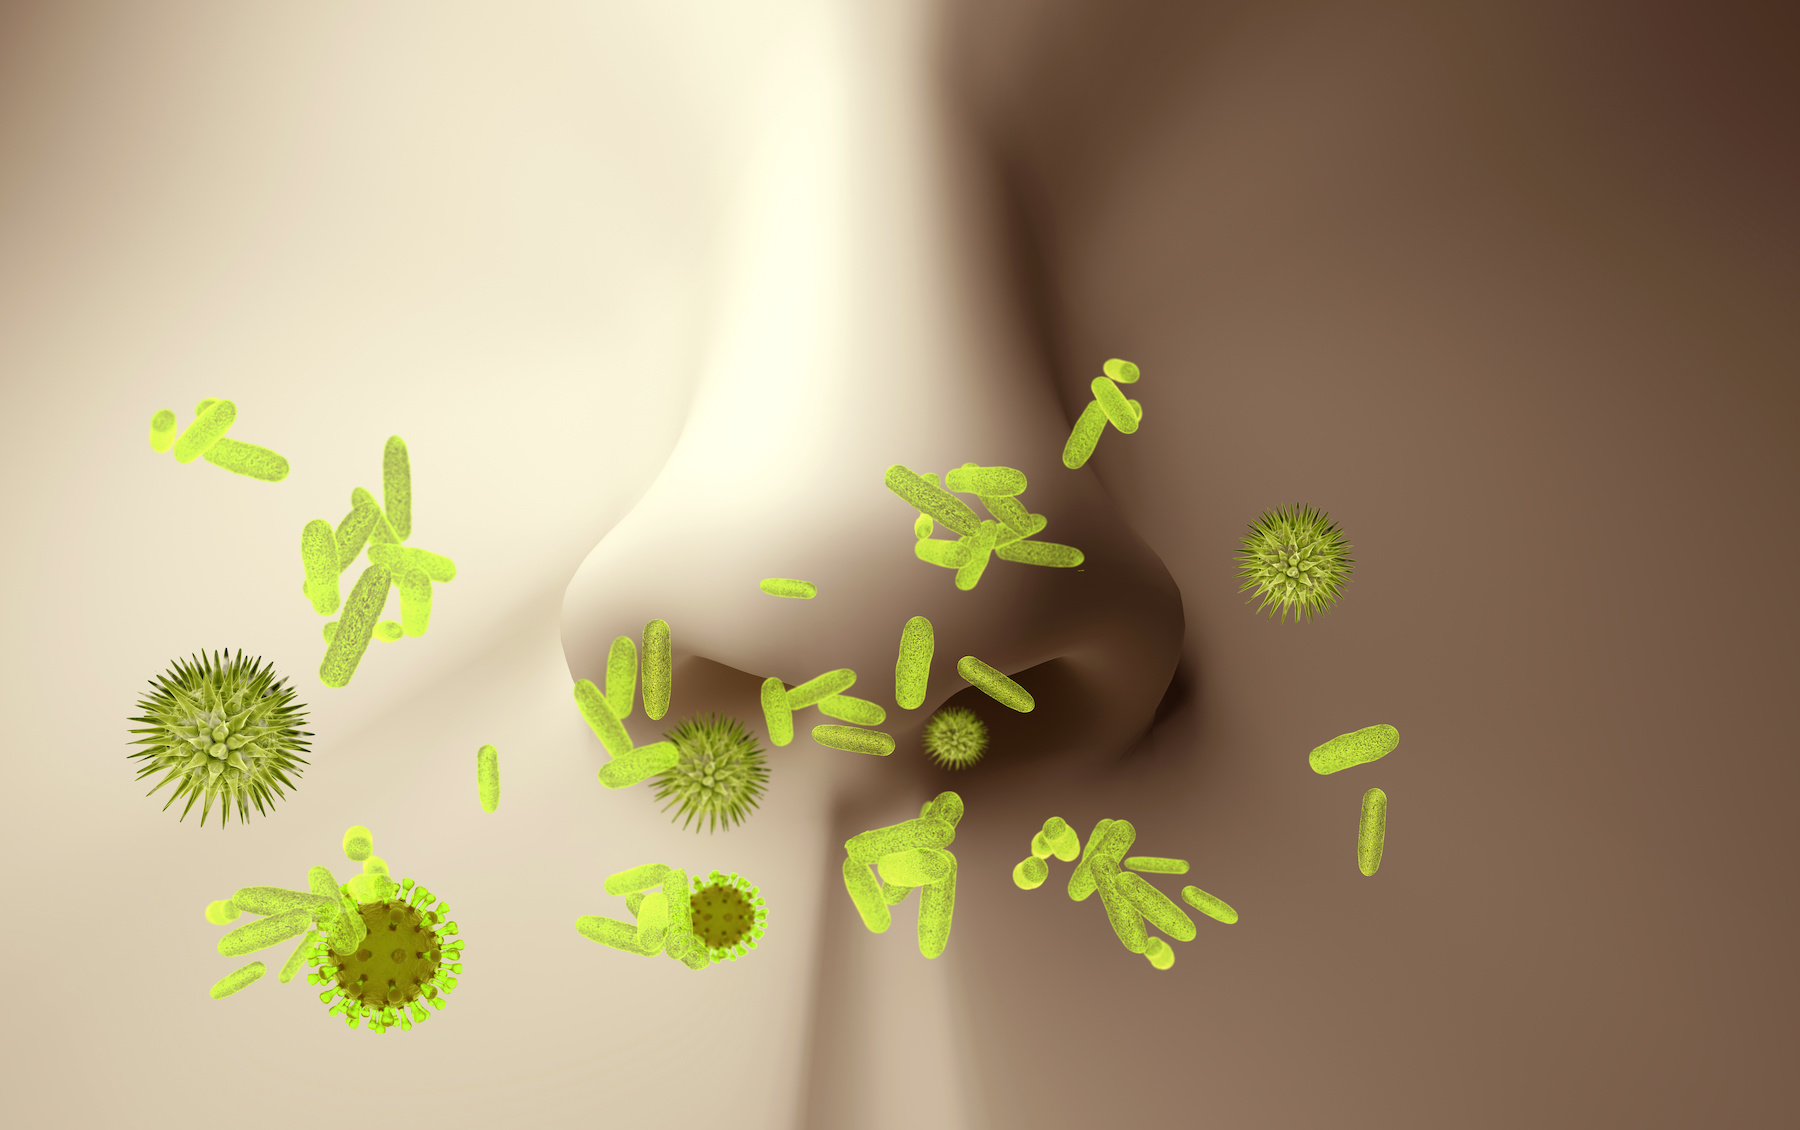 Des probiotiques dans le nez pour se débarrasser des maladies respiratoires ? © goanovi, Adobe Stock